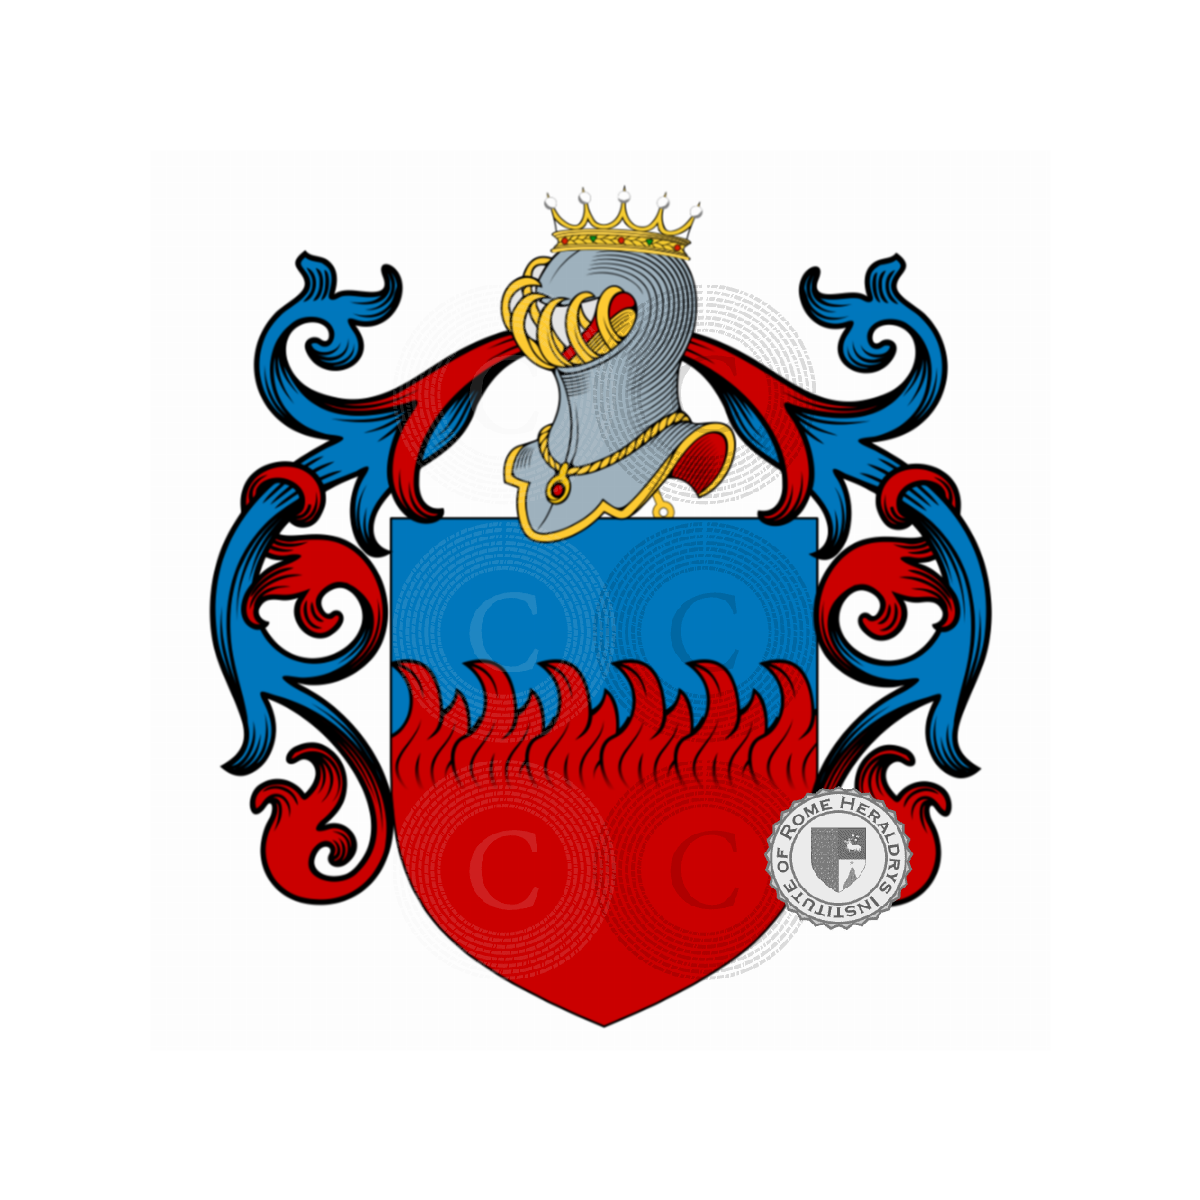 Wappen der FamilieRusso, Rosso,Russo di Cerami